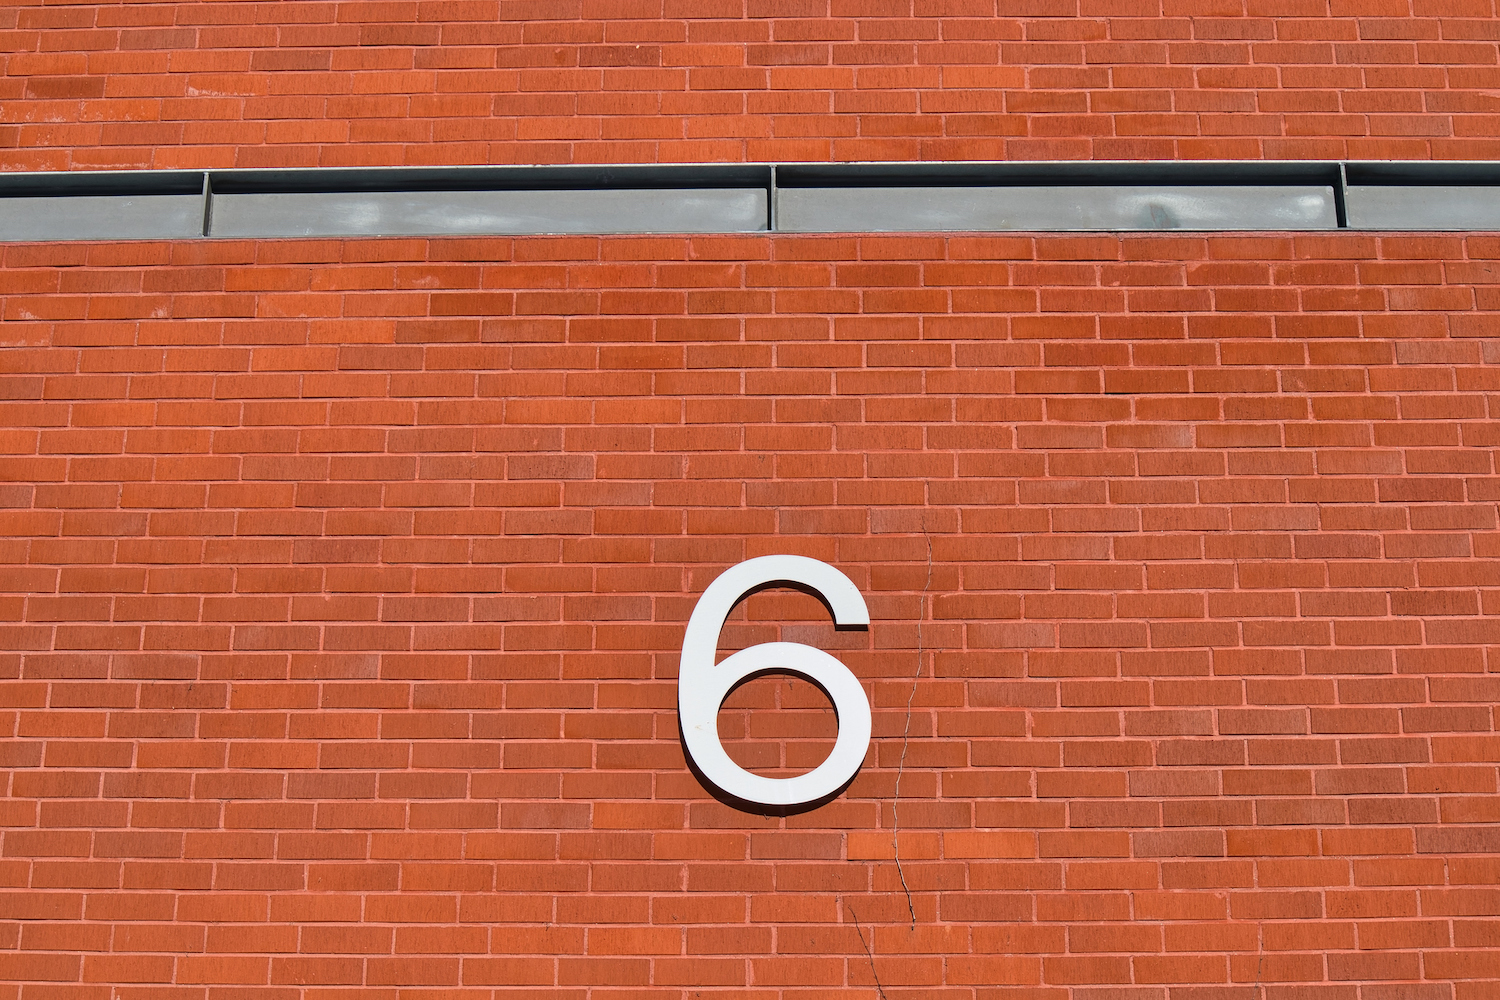 شماره شش روی یک دیوار آجری در فضای باز.  6 چالش رایج پیش روی تیم های امنیت سایبری و نحوه غلبه بر آنها